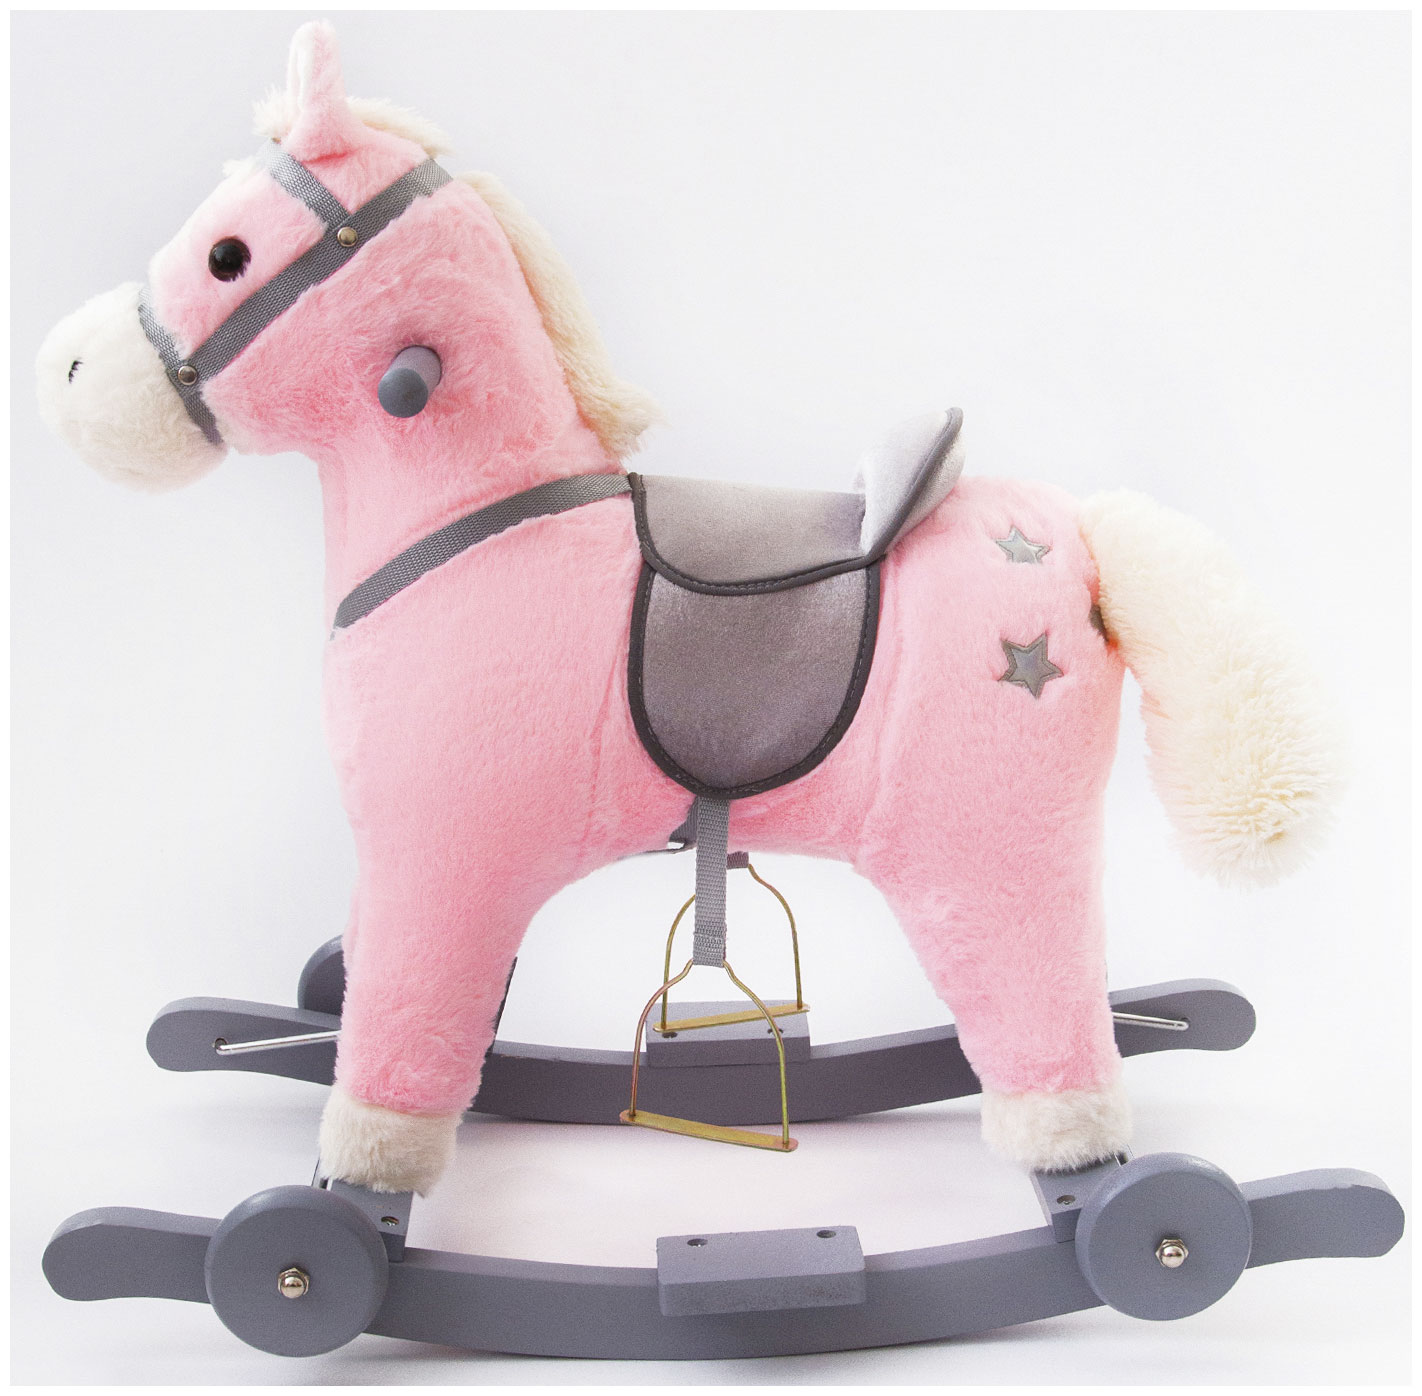 Лошадка каталка-качалка Amarobaby (Prime), с колесами, розовый, 63x35x60 см AMARO-28P-R0 качалка amarobaby лошадка amaro 28p серый